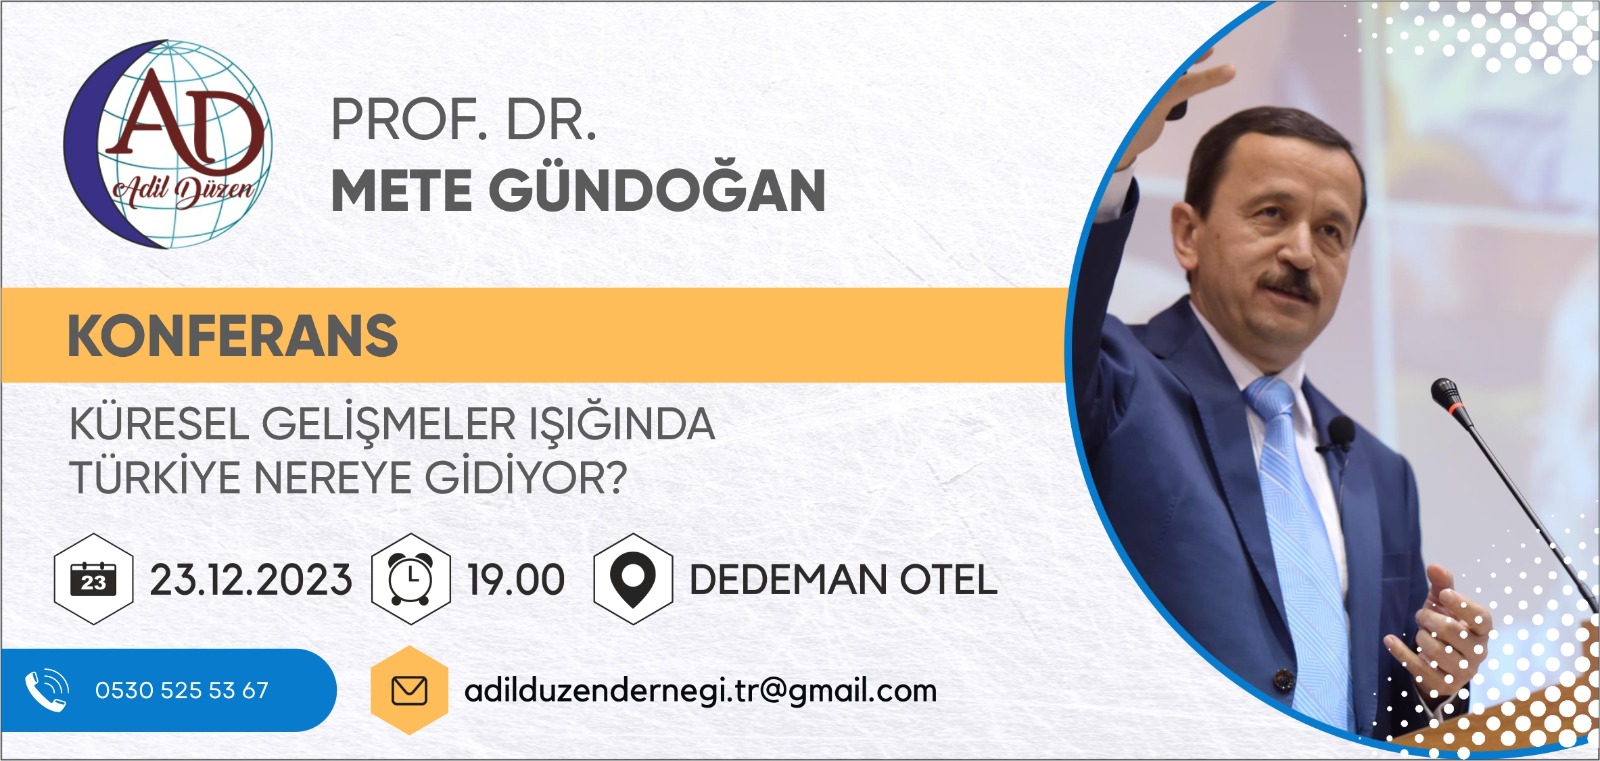 Mete Gündoğan